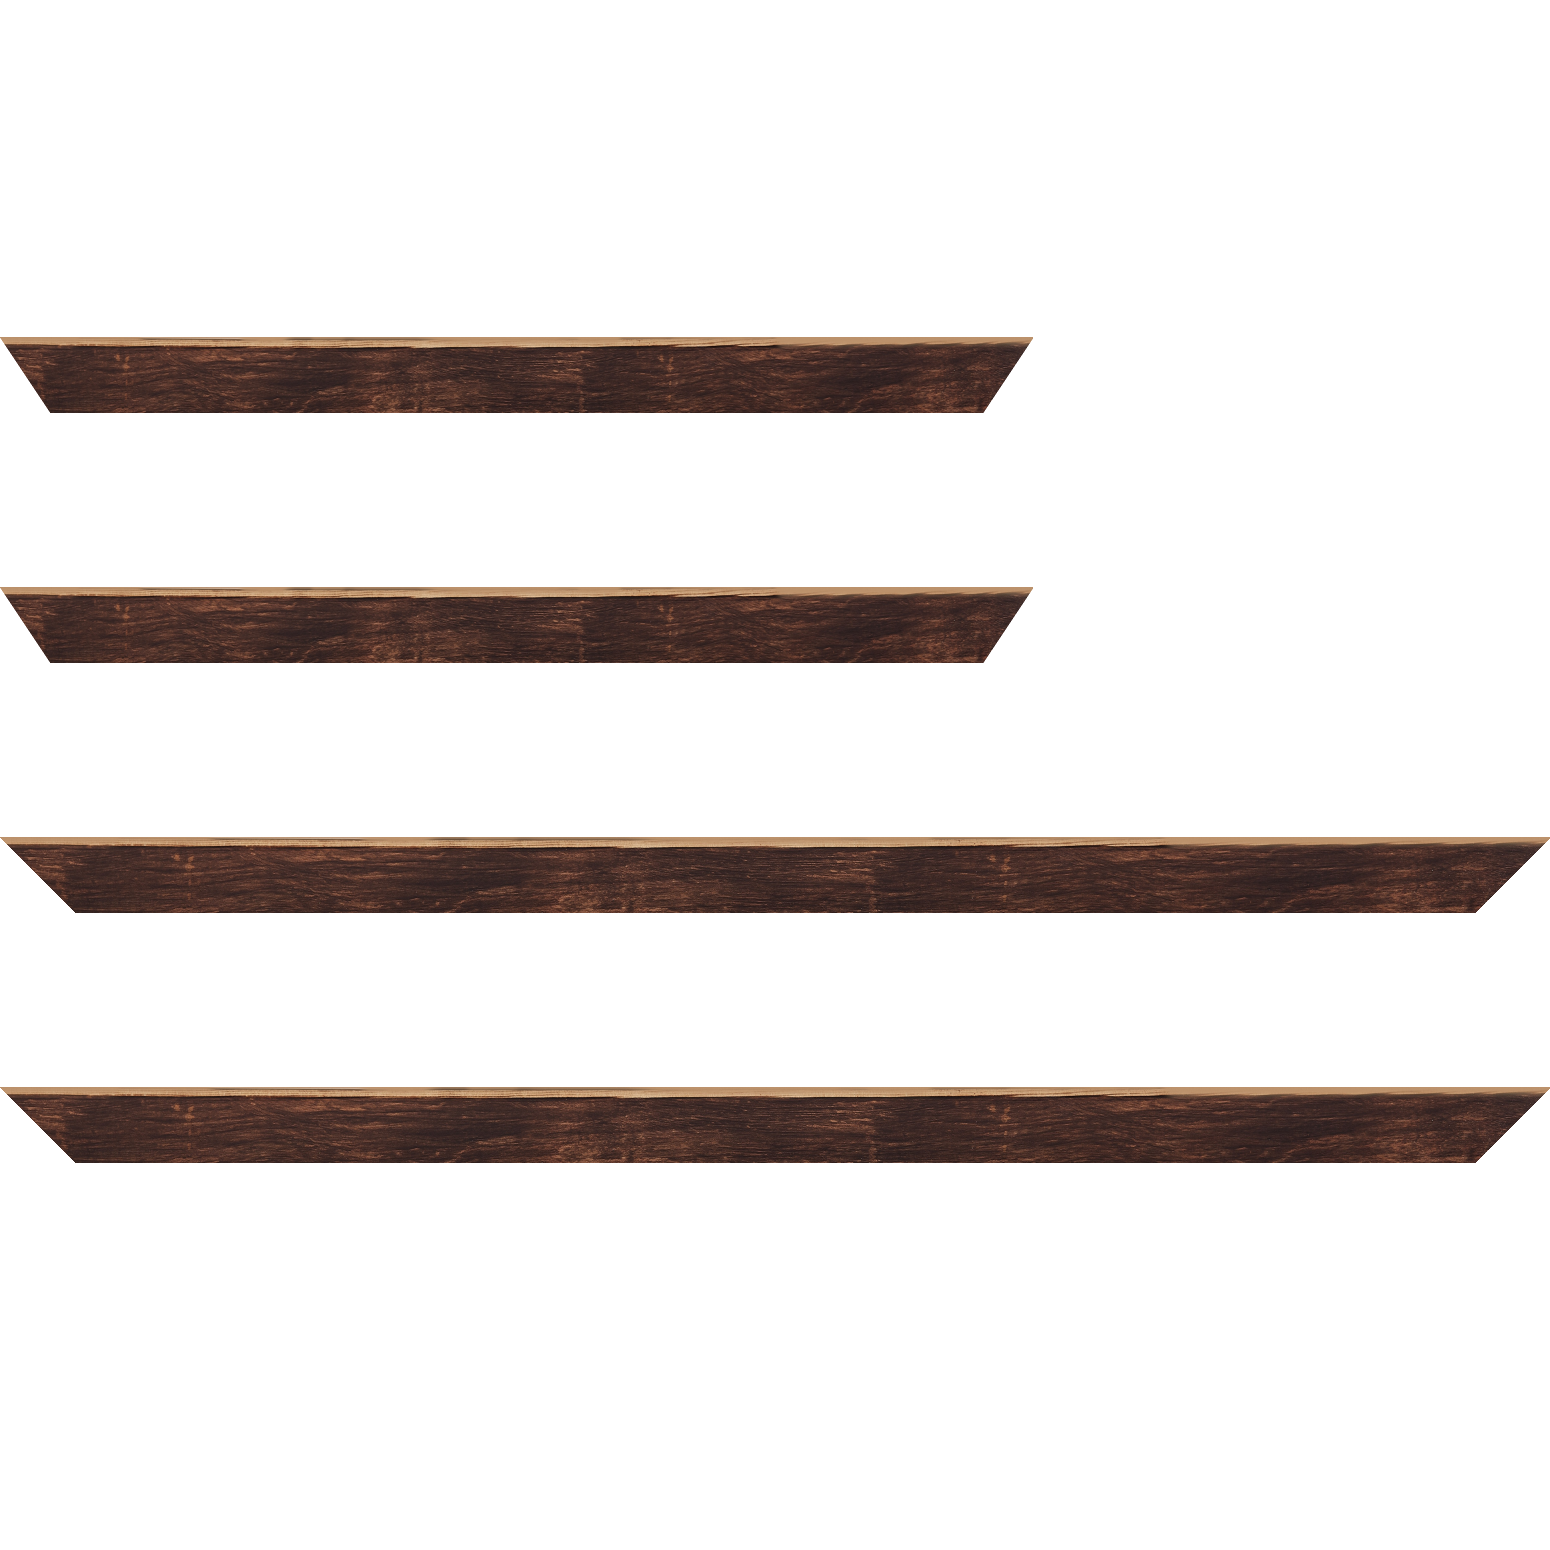 Baguette bois profil arrondi en pente plongeant largeur 2.4cm couleur marron effet ressuyé, angle du cadre extérieur filet naturel - 24x30